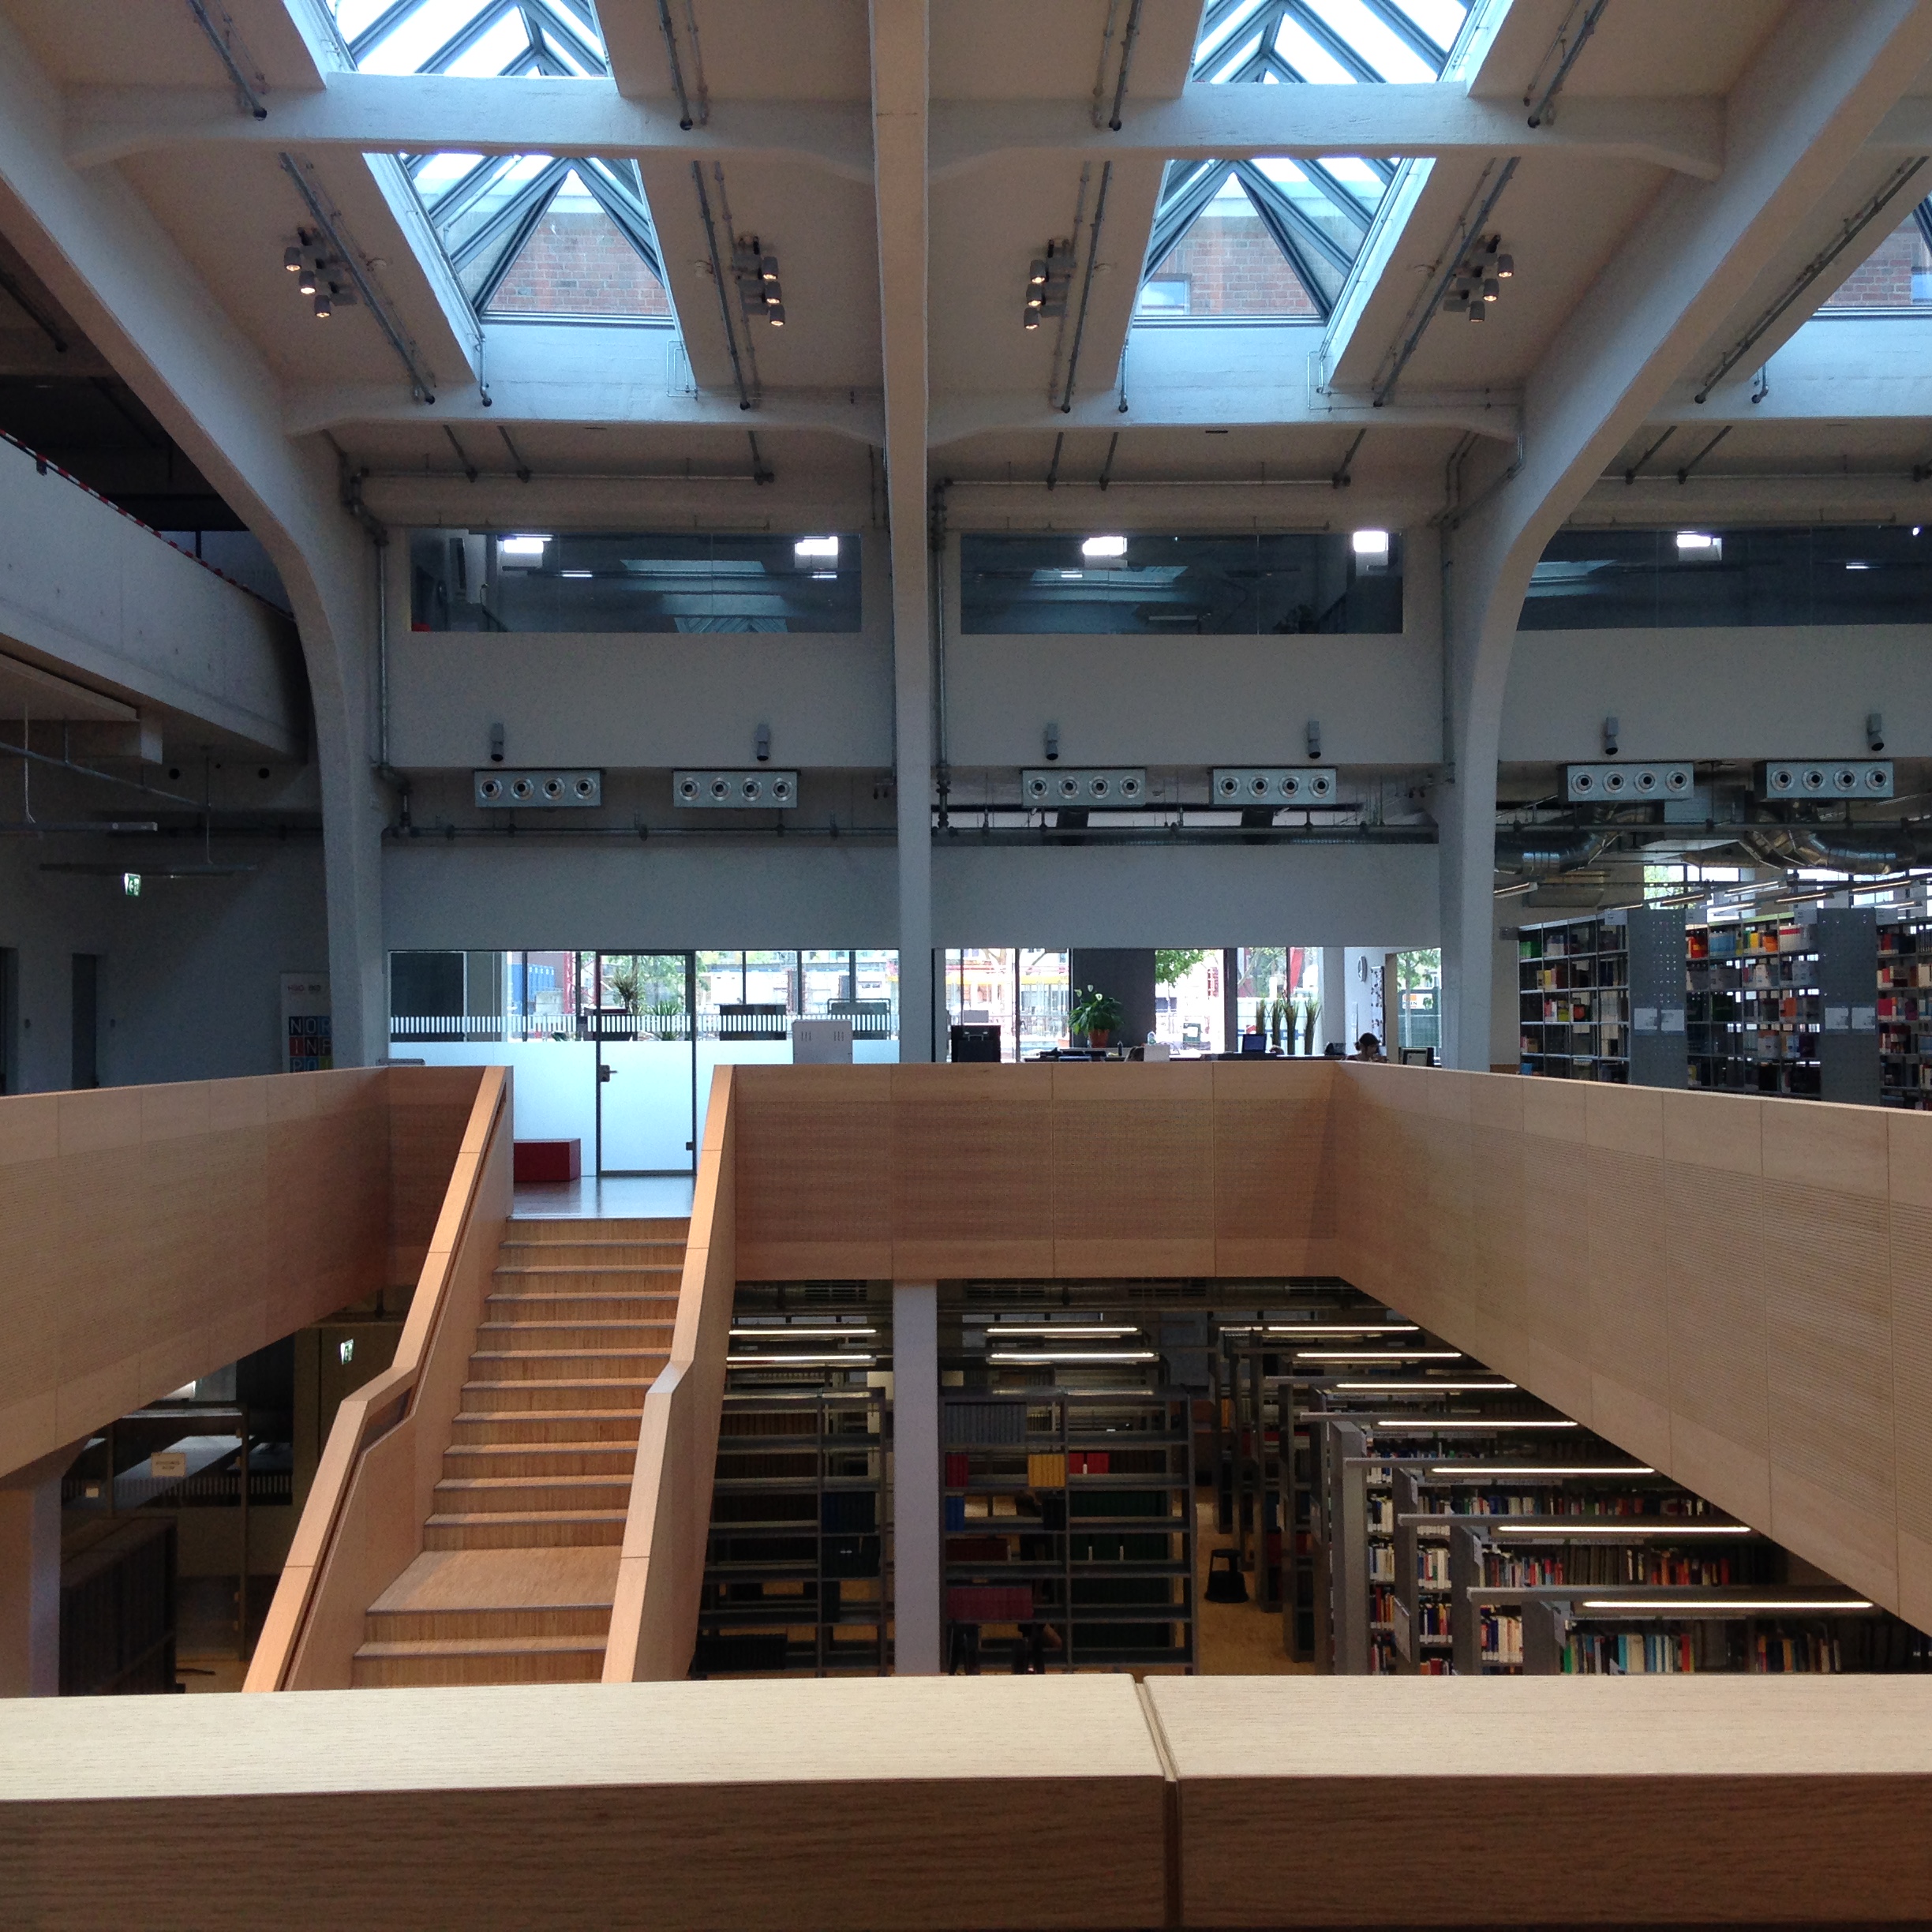 אולם הספרייה והירידה למפלס התחתון (צילום: טלי חתוקה)